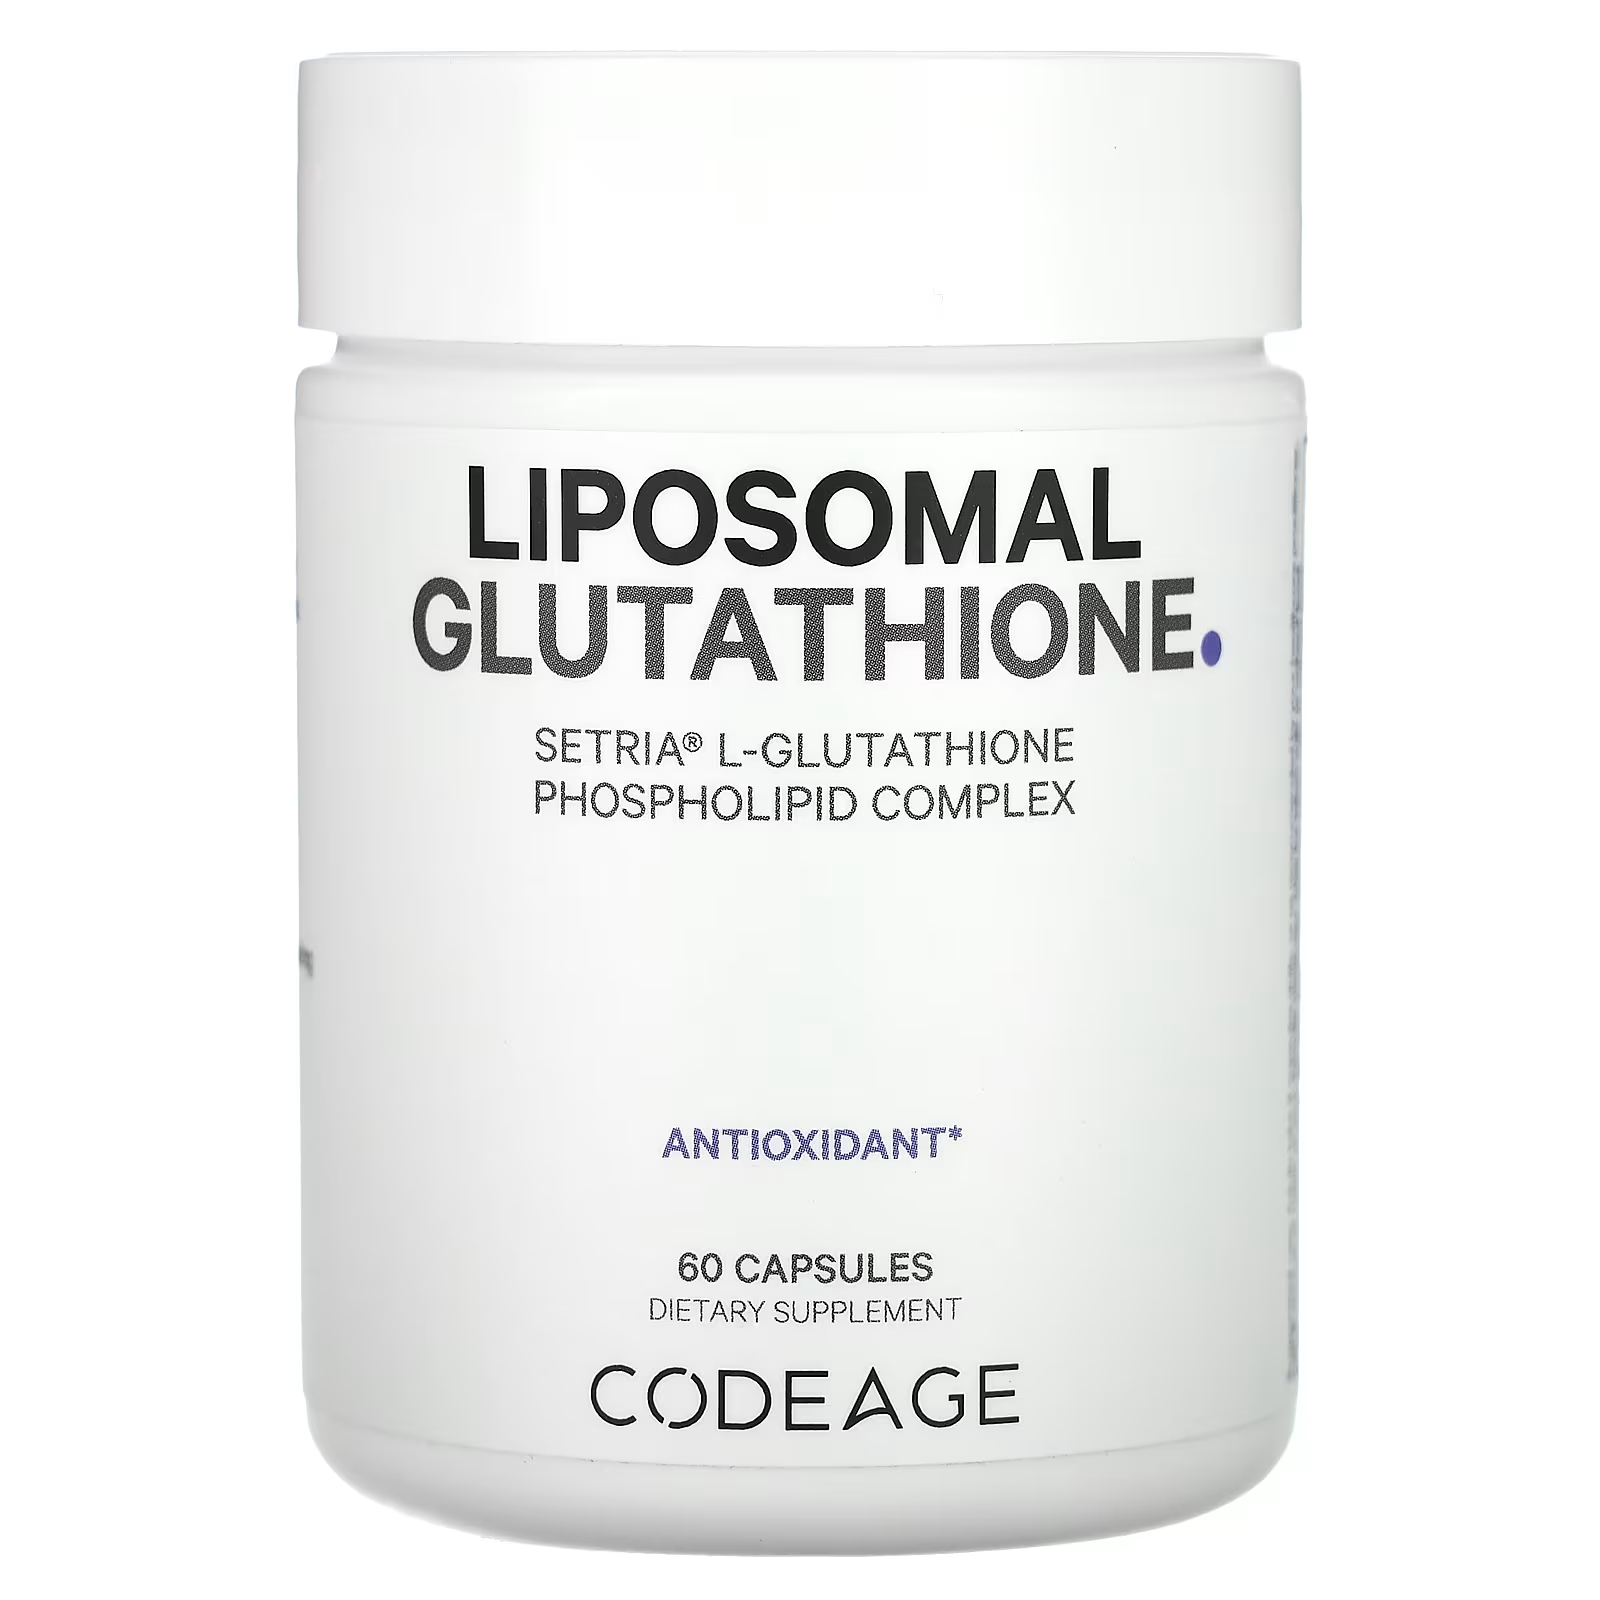 Codeage Липосомальный глутатион 60 капсул codeage липосомальный глутатион 1000 мг 60 капсул 500 мг на капсулу